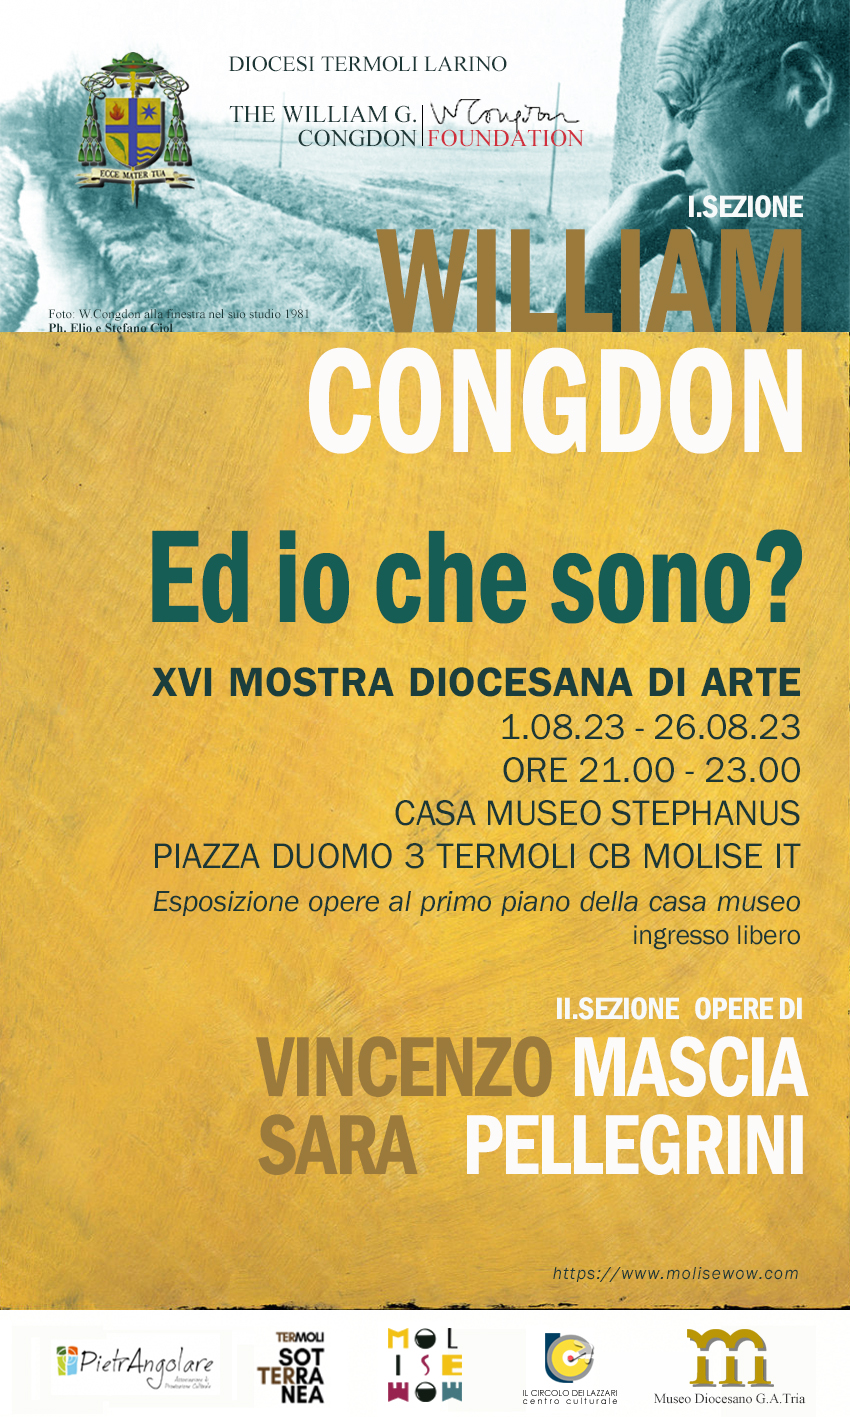 “Ed io che sono?” - XVI mostra diocesana a Termoli con William Congdon (1912-1998), Vincenzo Mascia e Sara Pellegrini